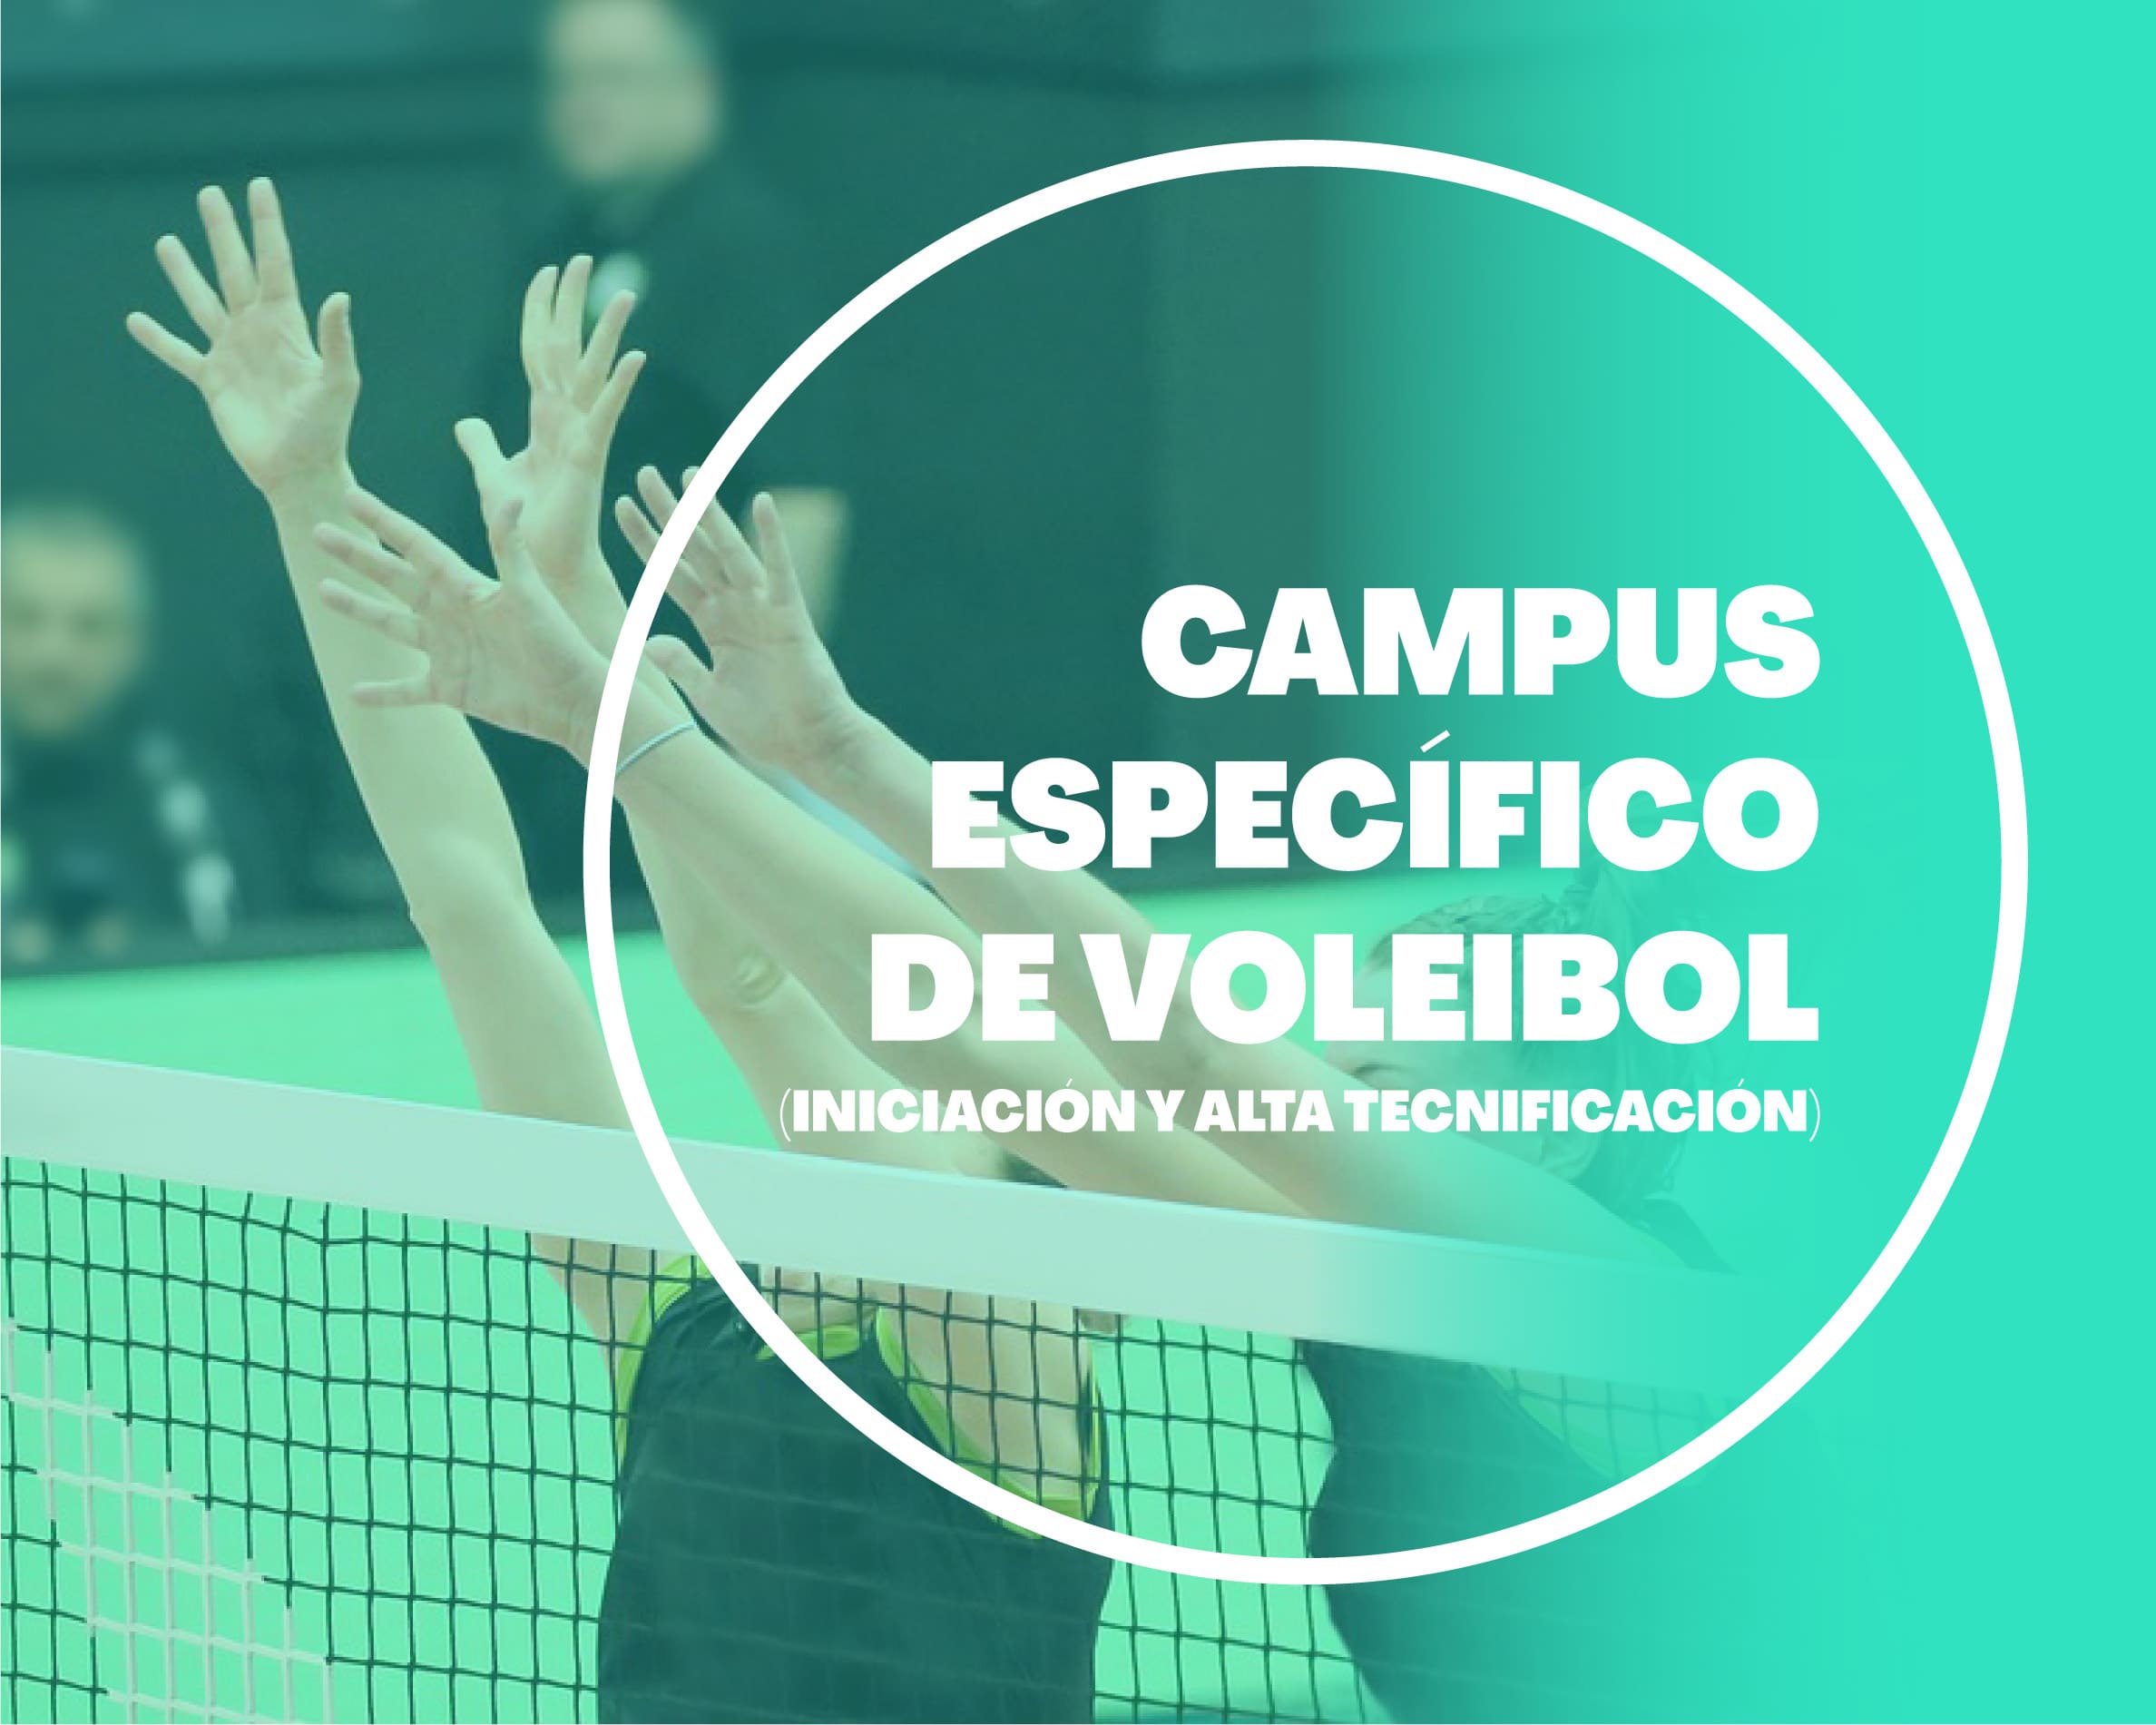 Campus Específico de Voleibol